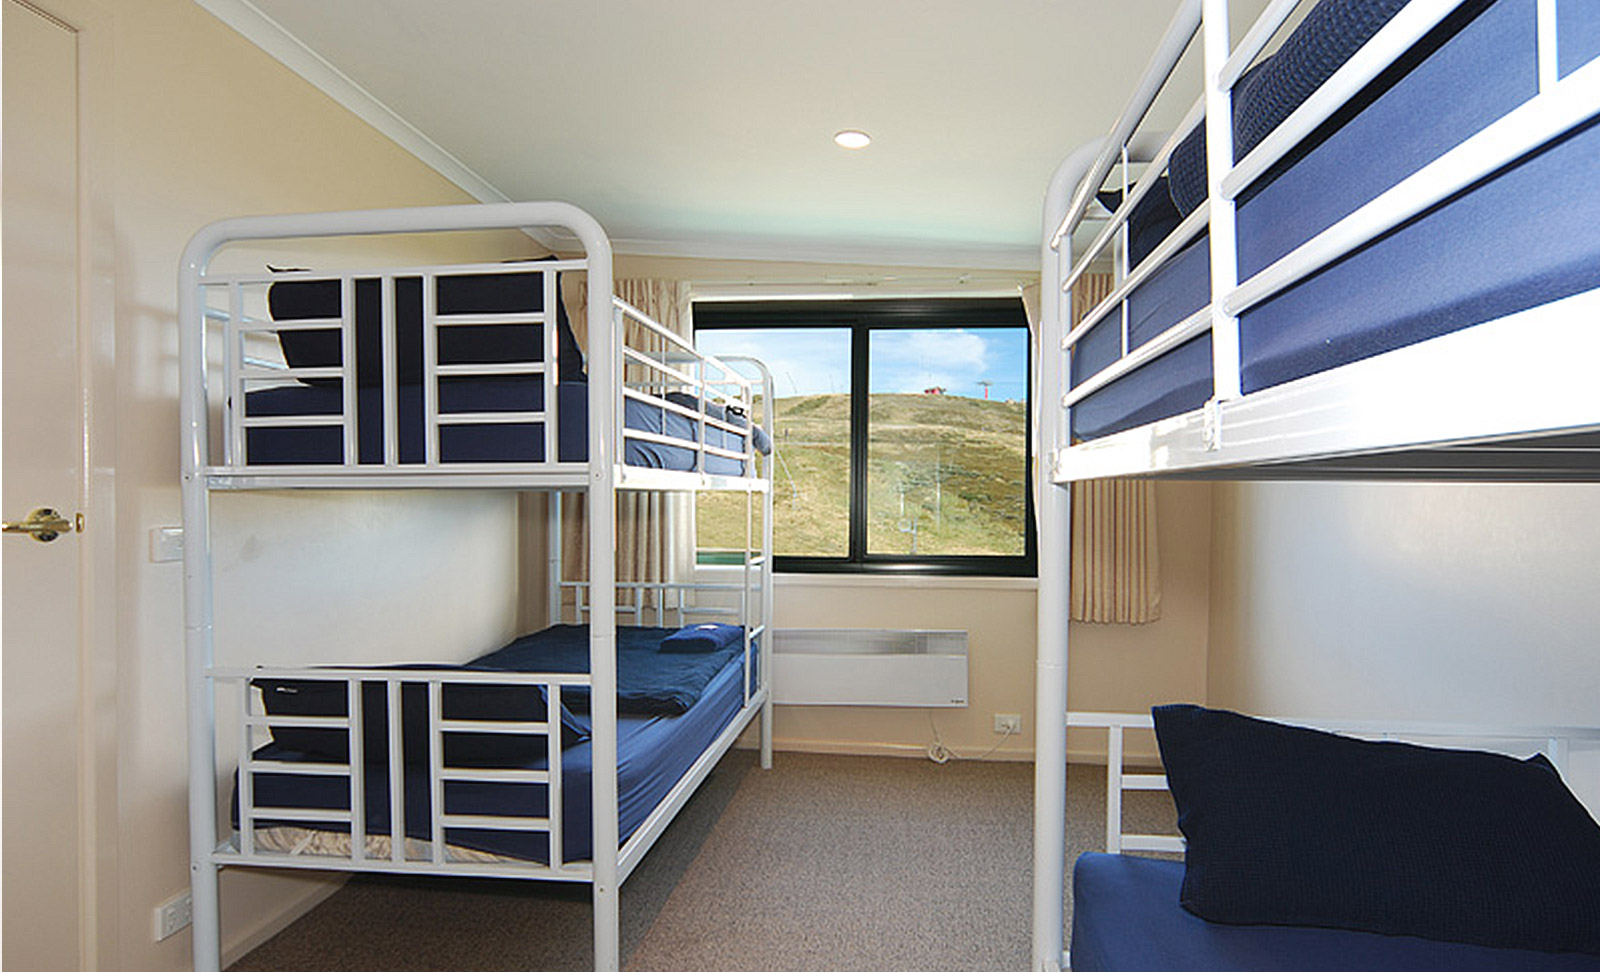 Arlberg Hotel Mt Buller - Accommodation Adelaide 4